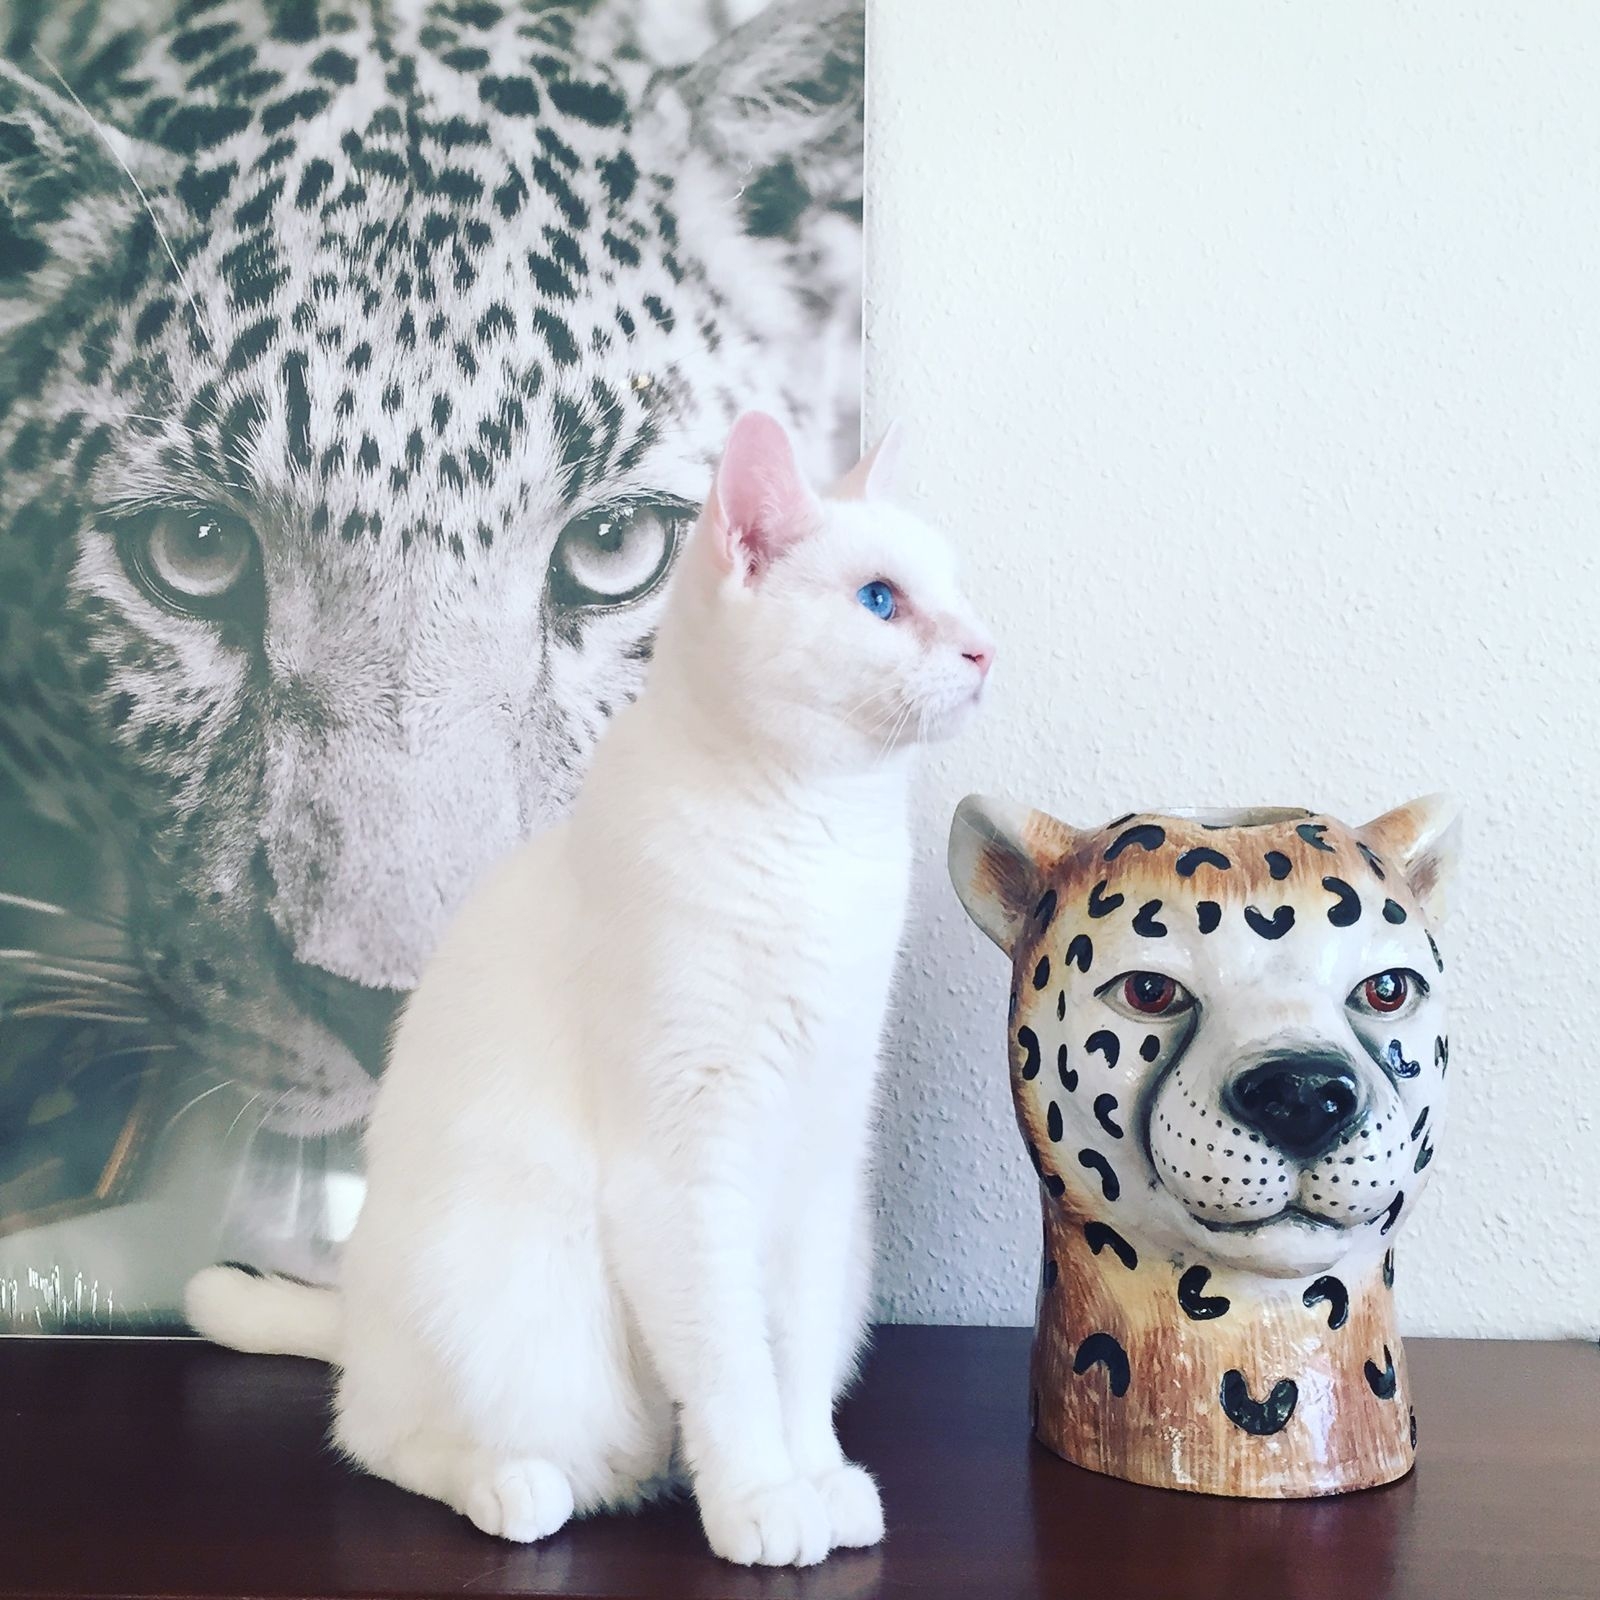 Vita katten Zingo gillar sina övriga kattprylar.